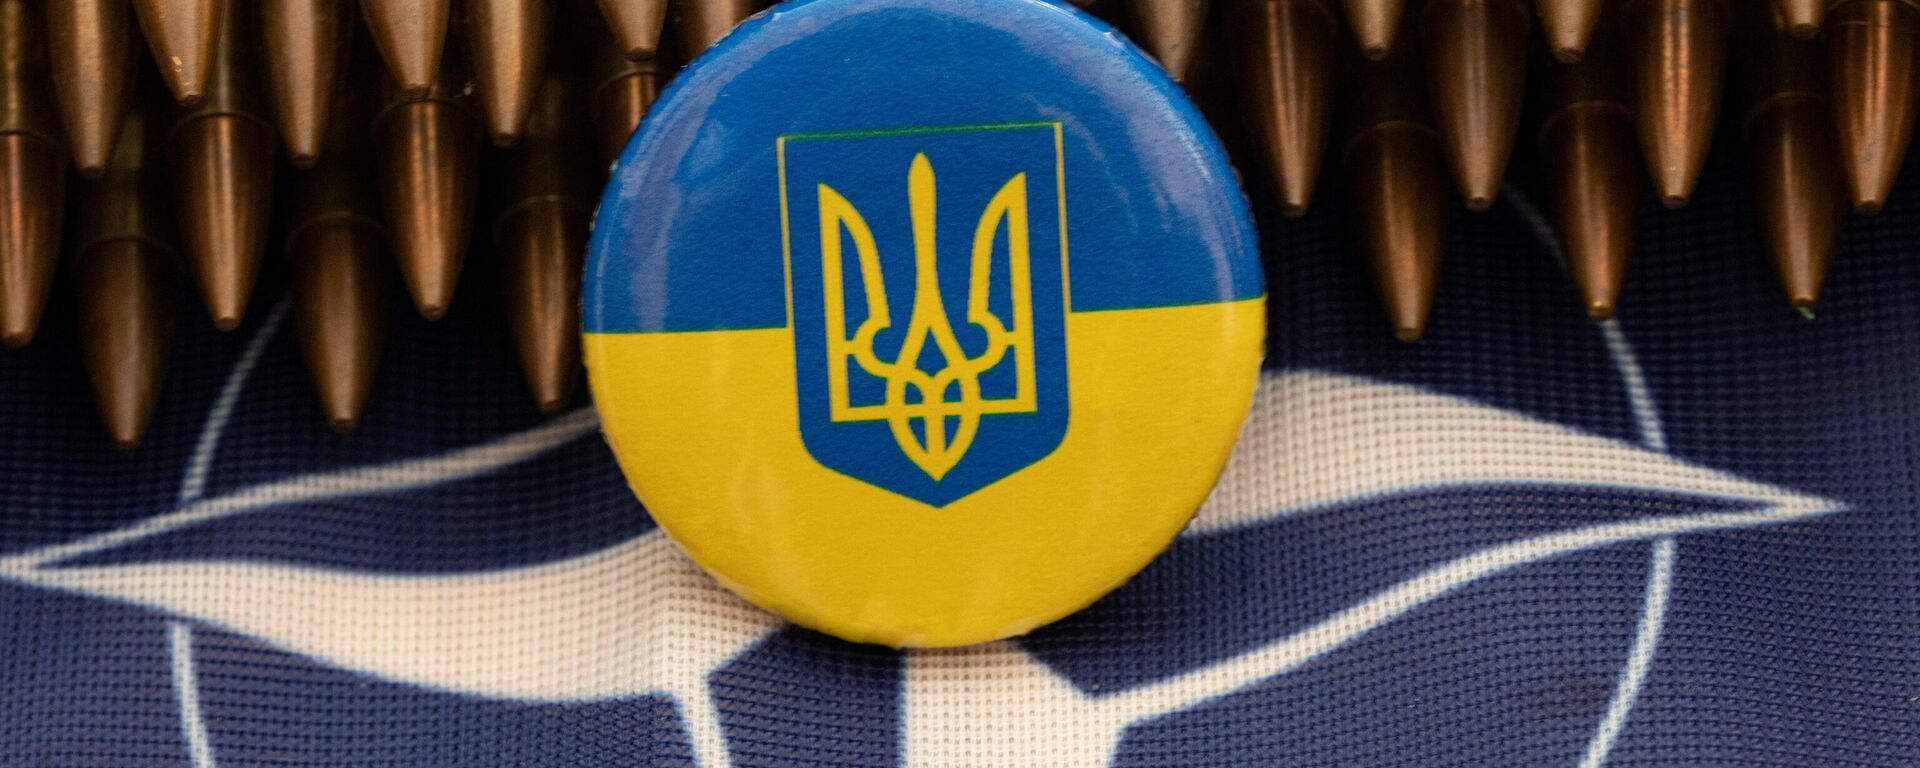 Não haverá mais entregas de armas para Kiev' com novo governo dos Países  Baixos, diz analista - 17.12.2023, Sputnik Brasil